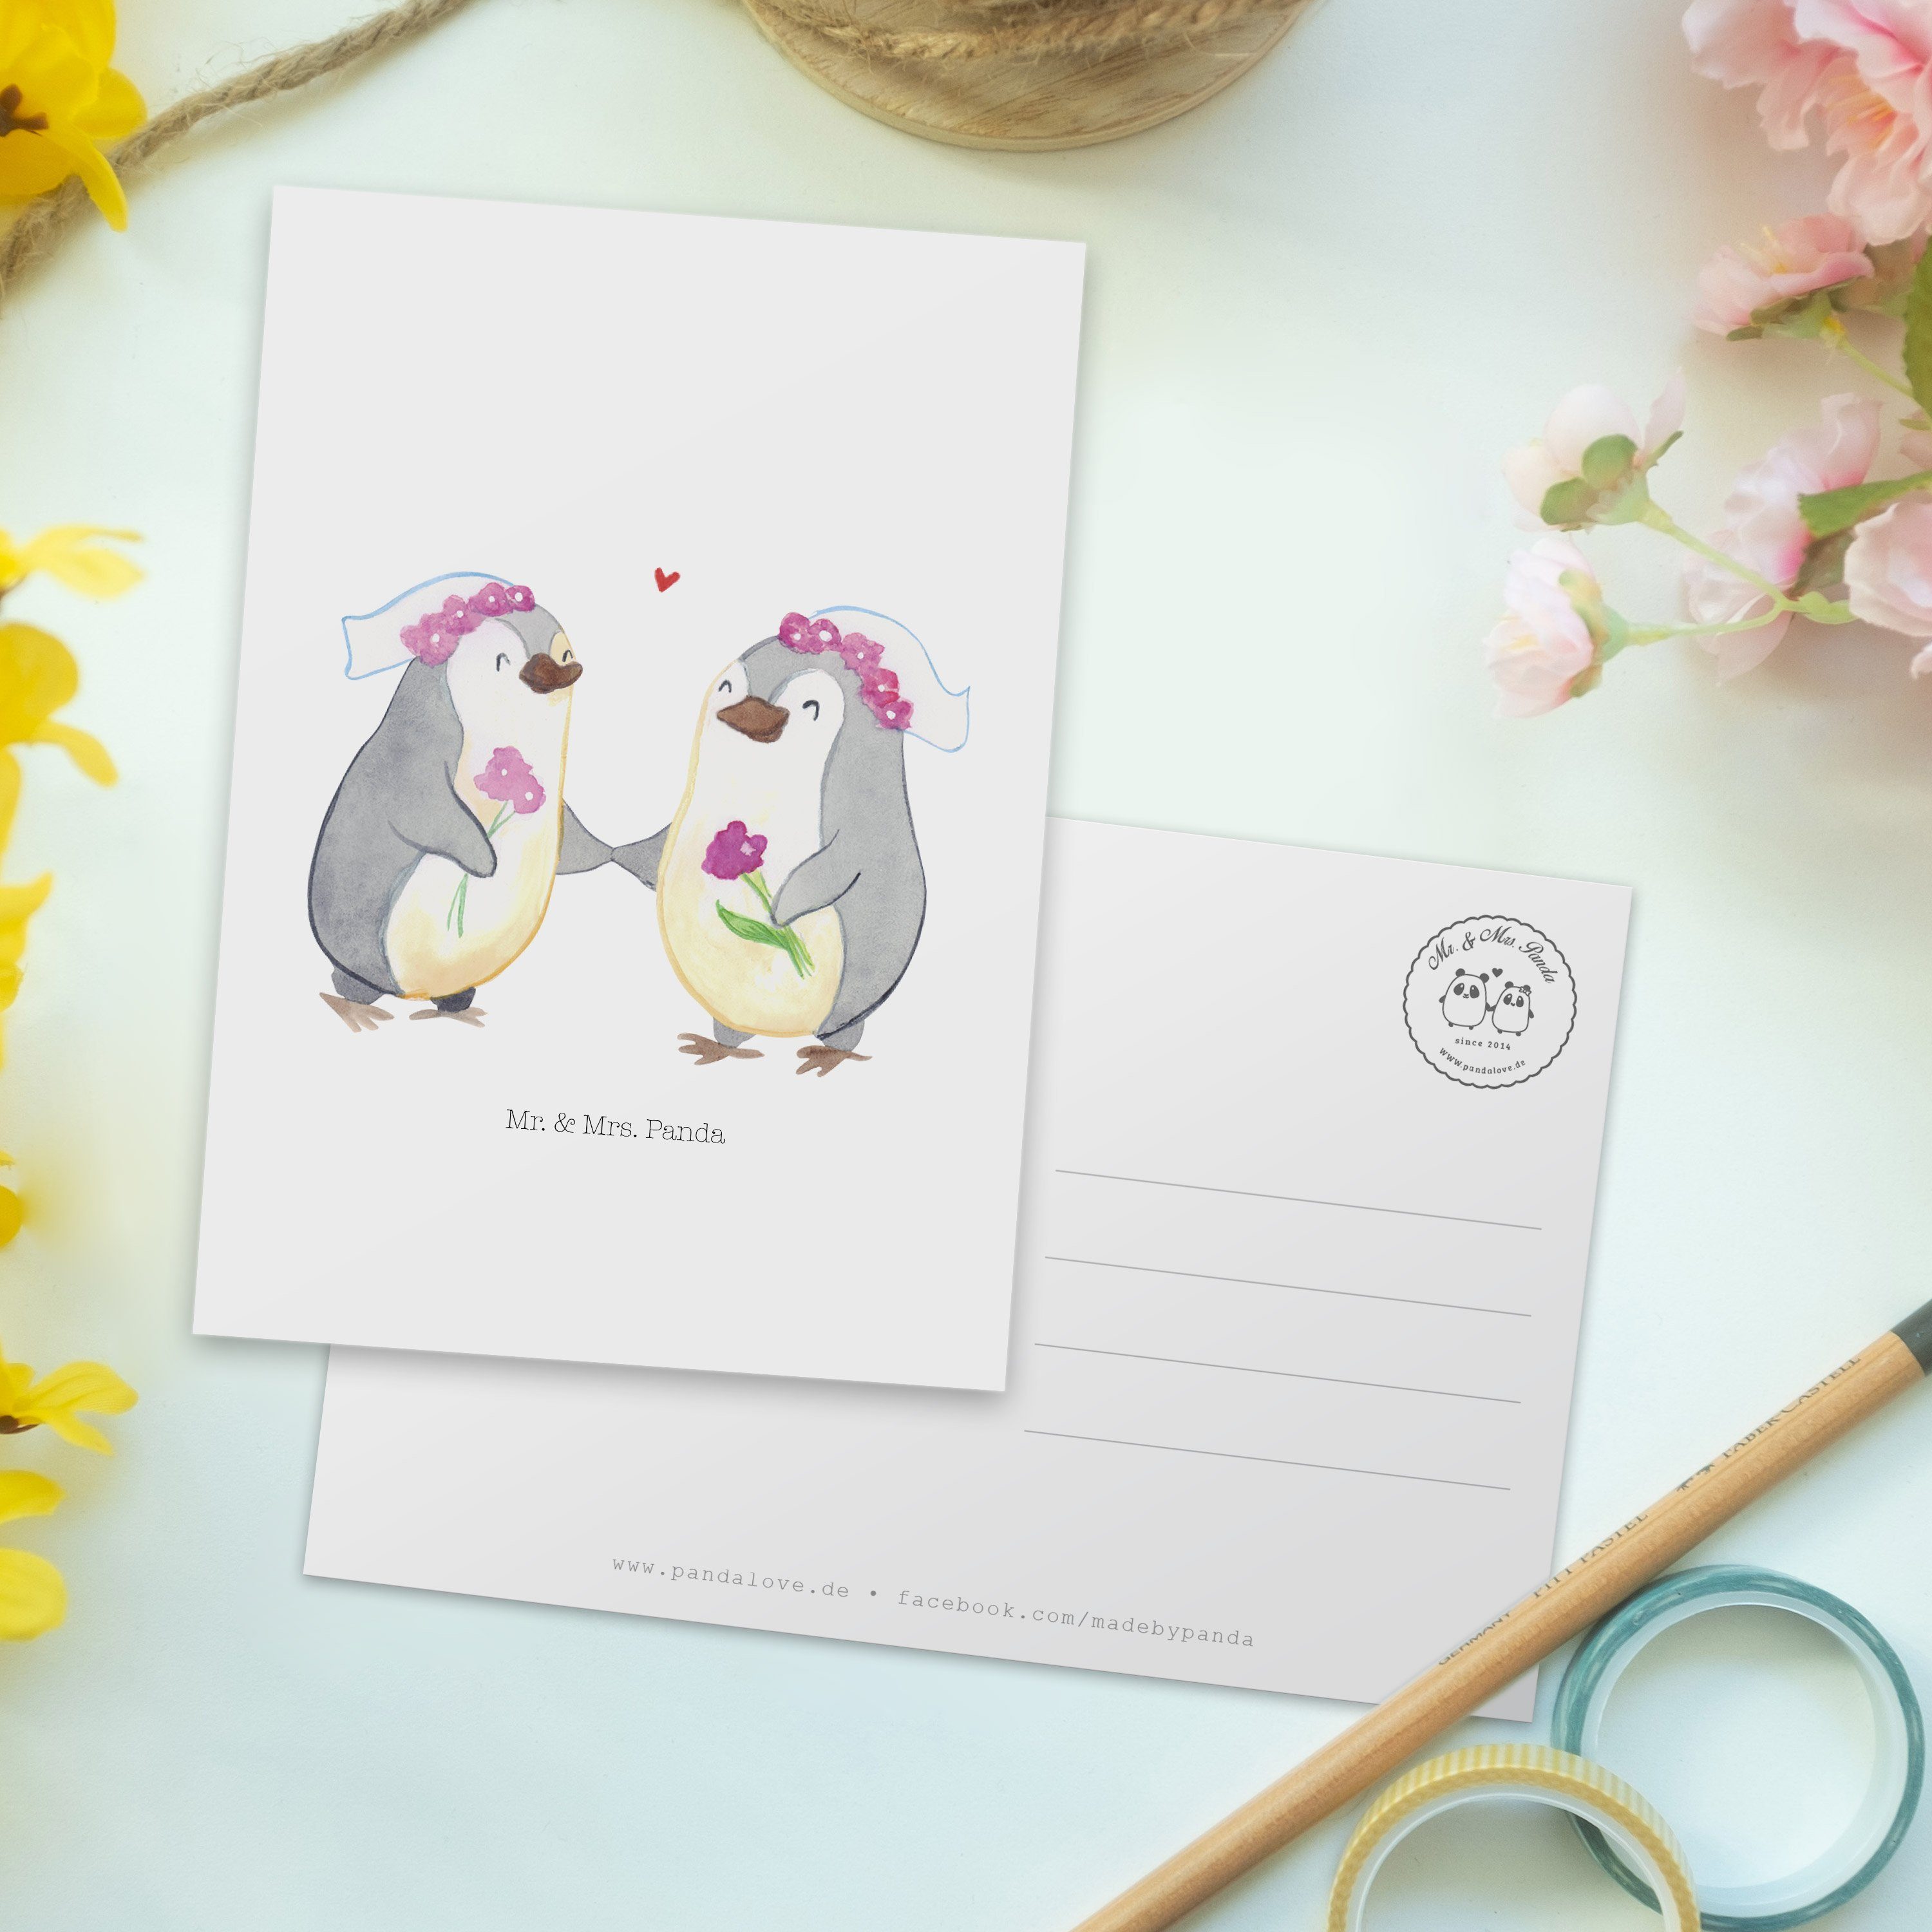 Mr. & Mrs. - Panda Pride Hochzeitsgeschenkide Pinguin Postkarte Geschenk, Weiß - Pärchen Lesbian